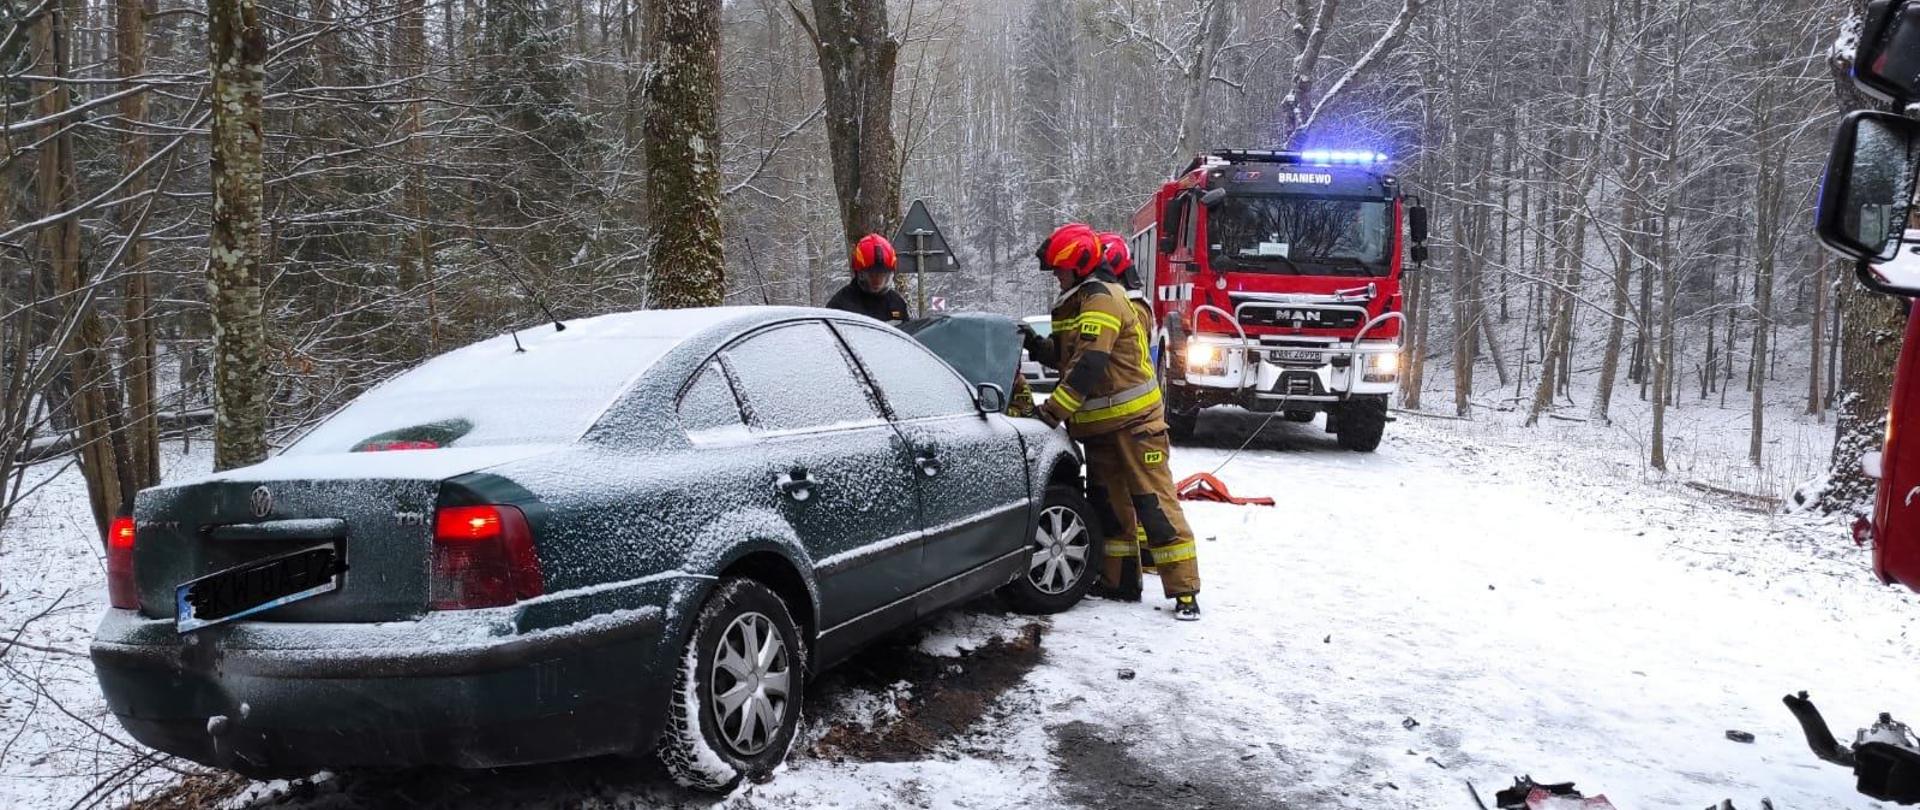 Zima, biało od śniegu. Z lewej strony stoi zielone auto osobowe przysypane śniegiem. Na drodze dużo śniegu. Dalej na drodze stoi samochód strażacki. Przy samochodzie osobowym strażacy w czerwonych hełmach.